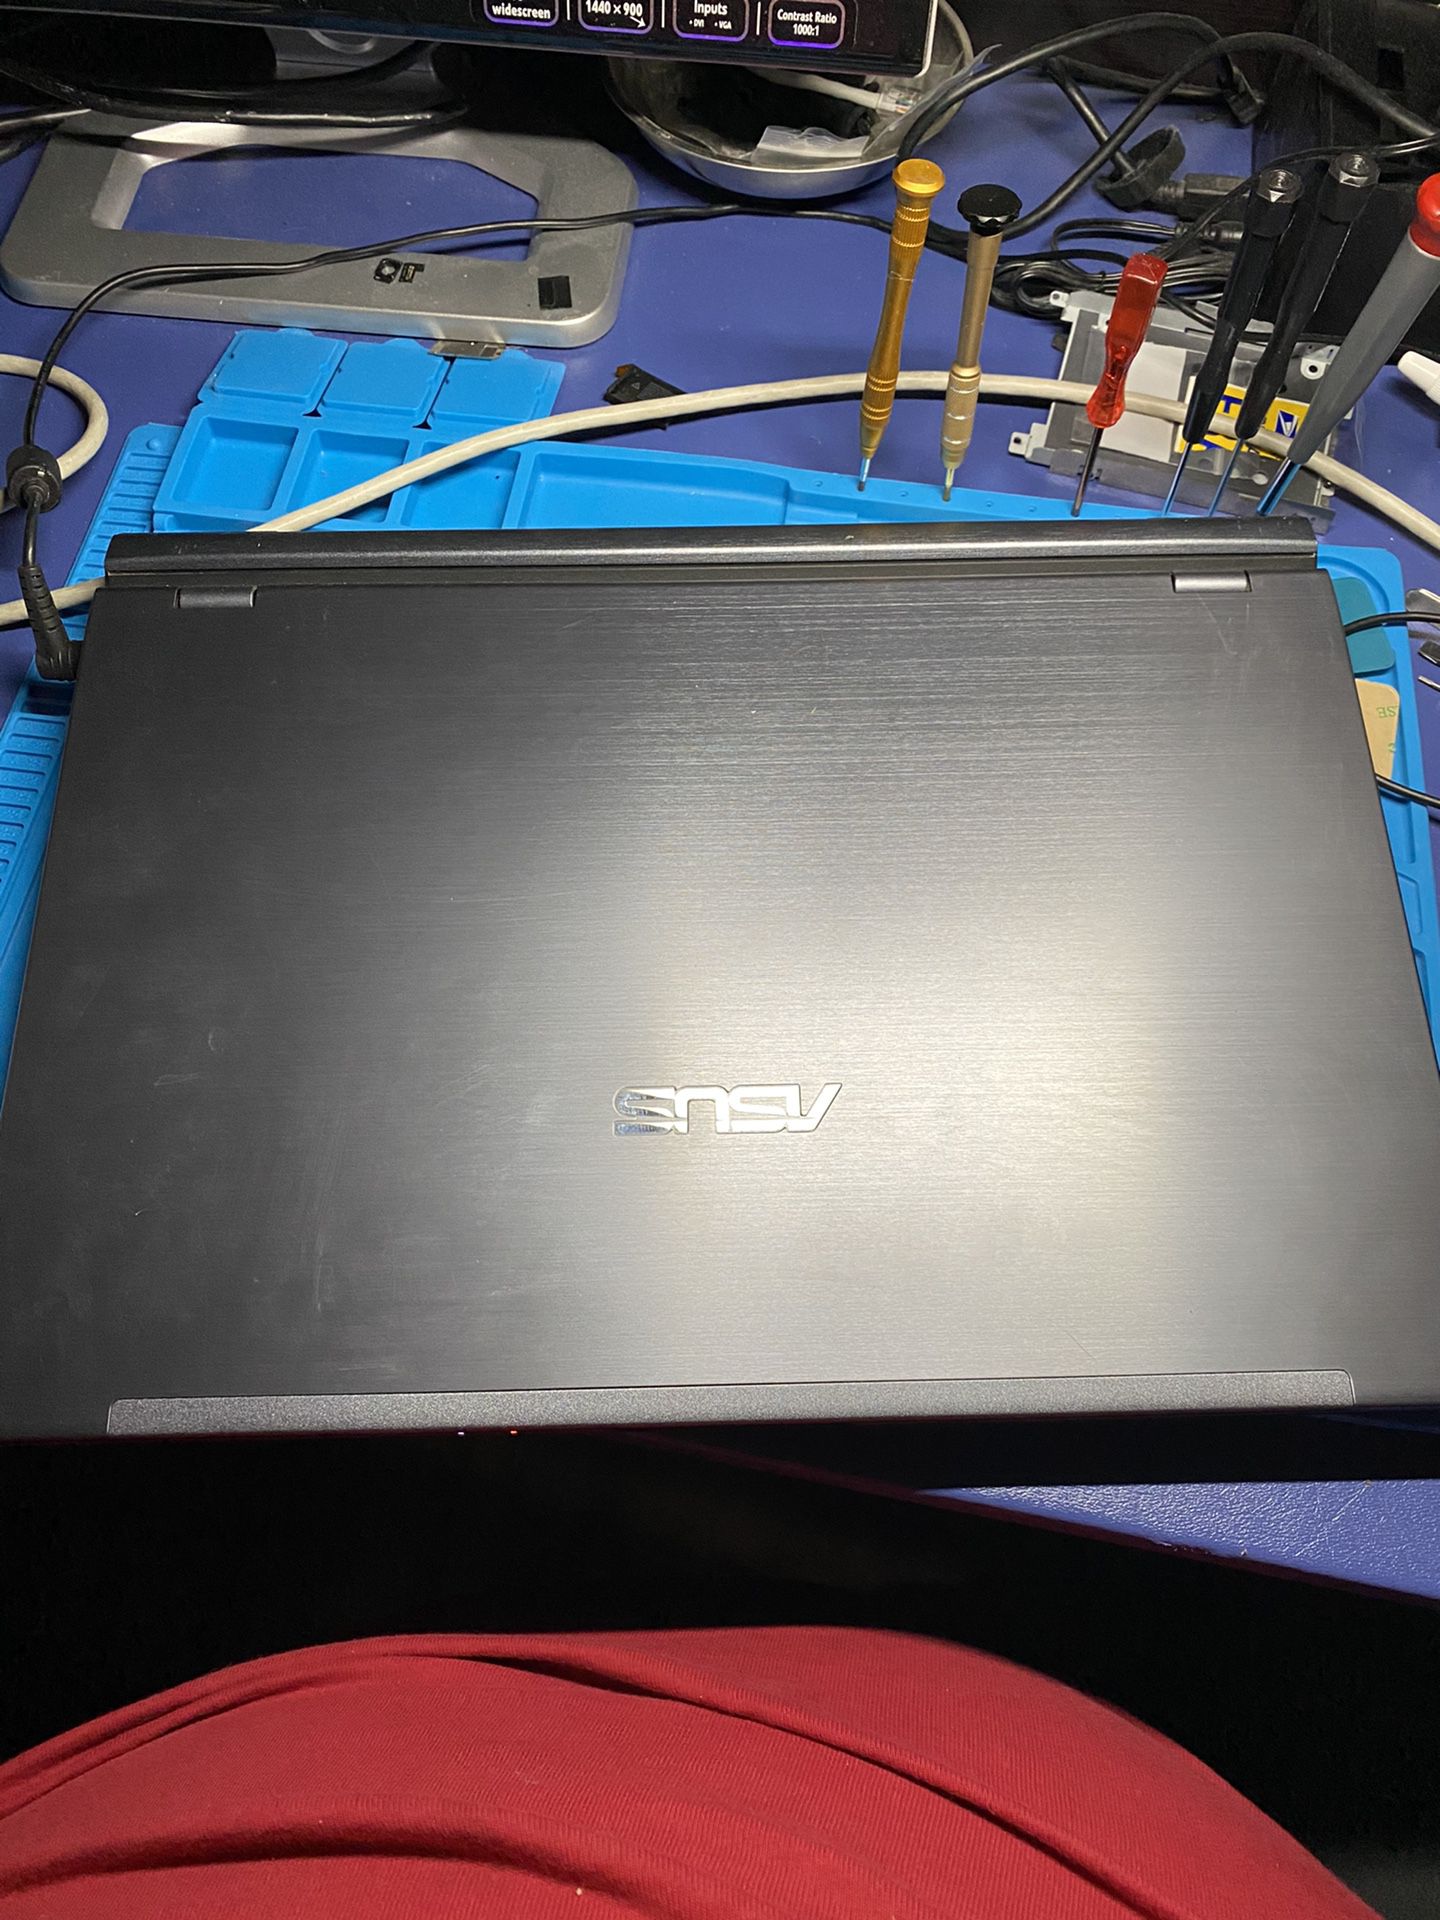 Asus 15” laptop